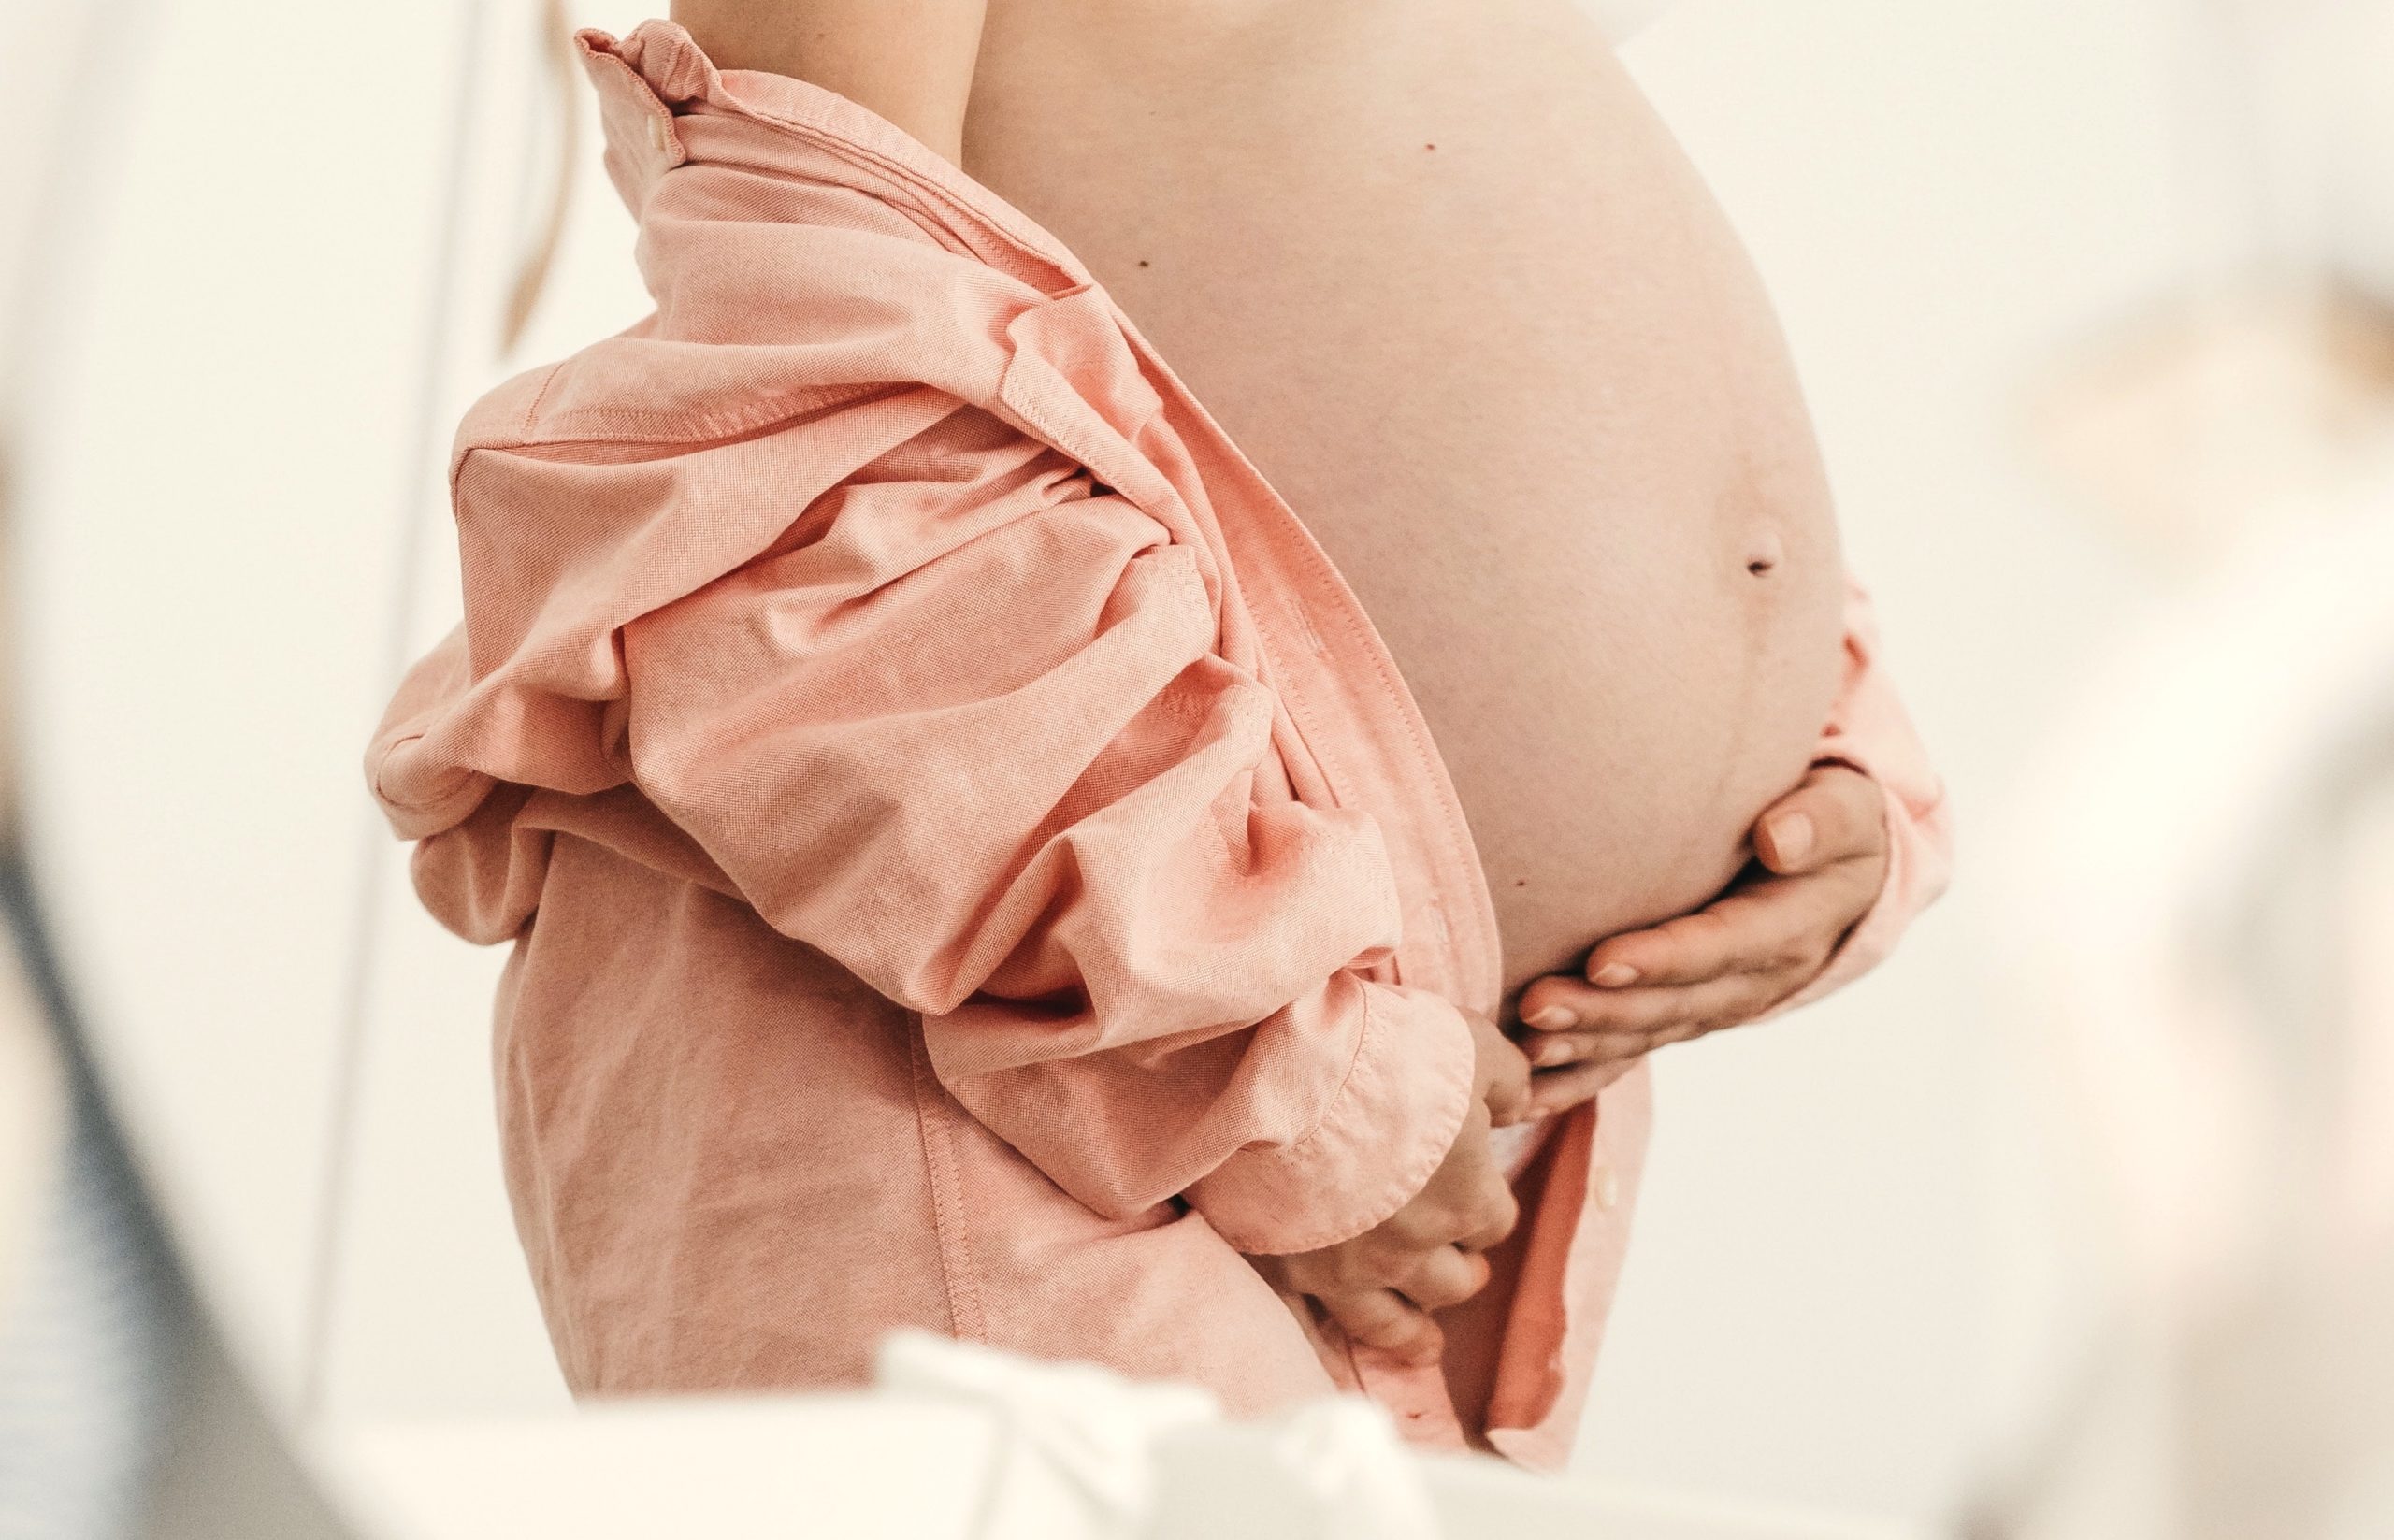 Vinculan el parto prematuro con sustancias químicas en la vagina